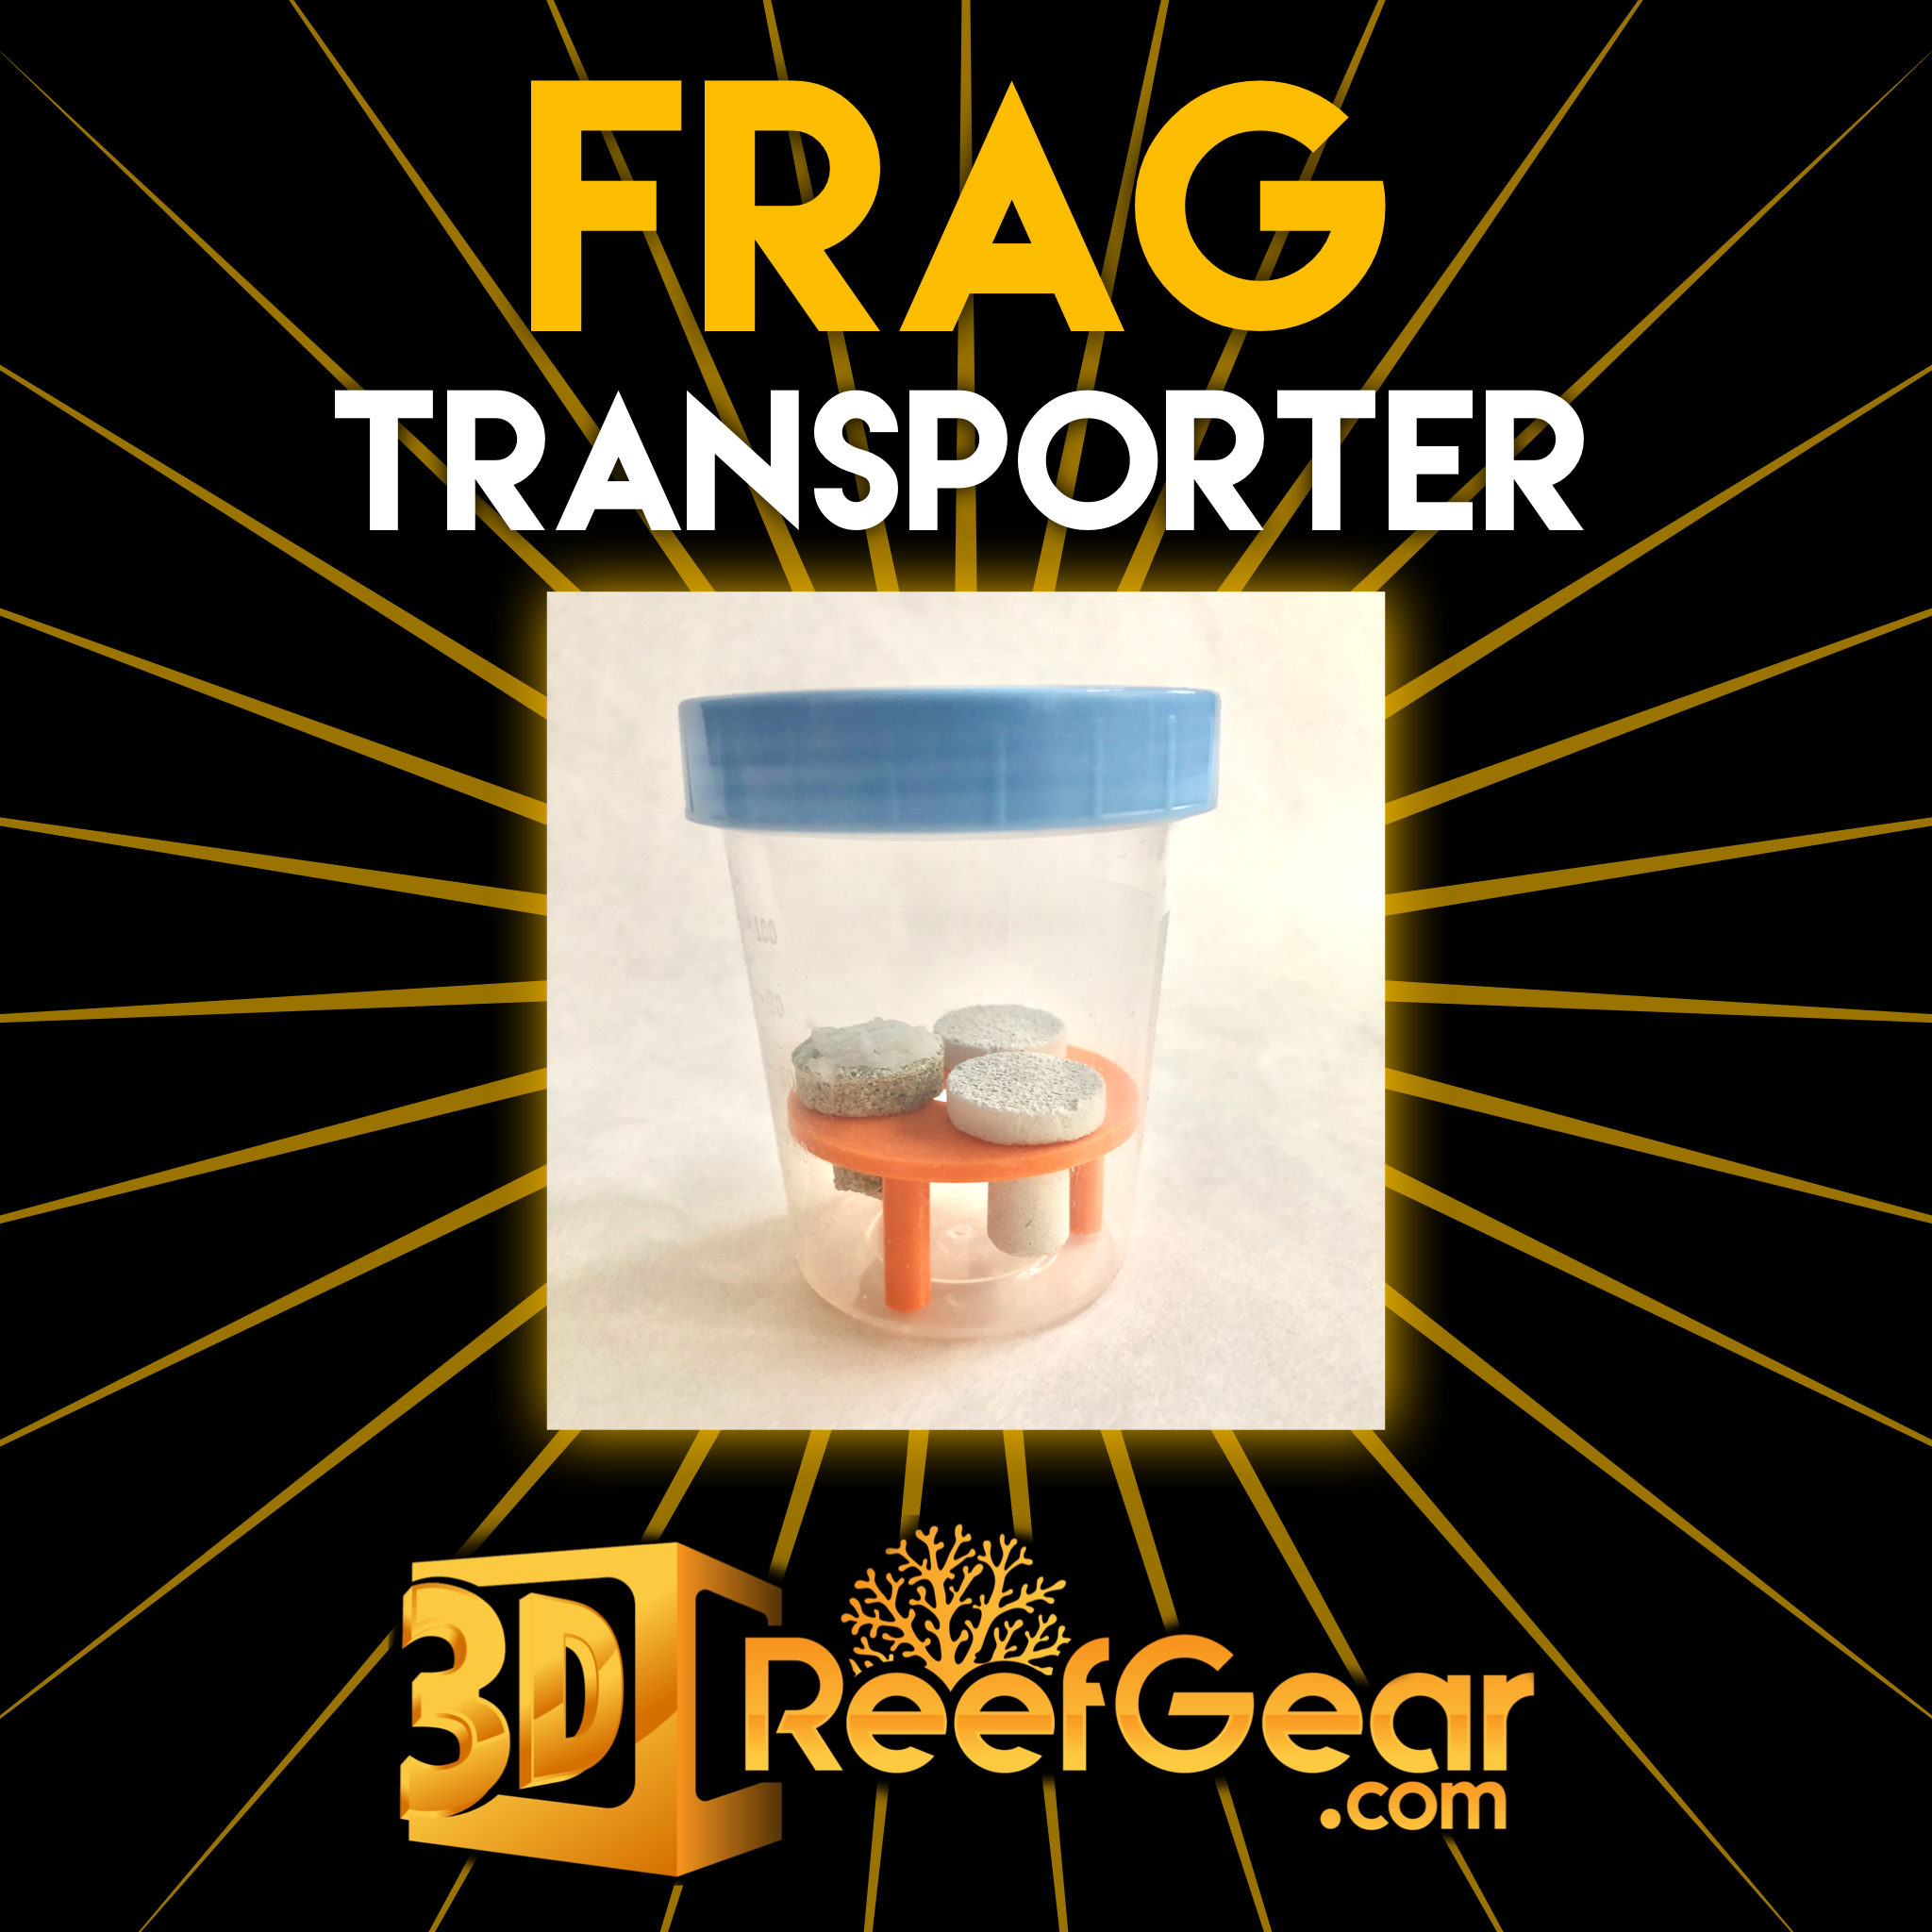 Frag Transporter - Version 2 - 3D Reef Gear